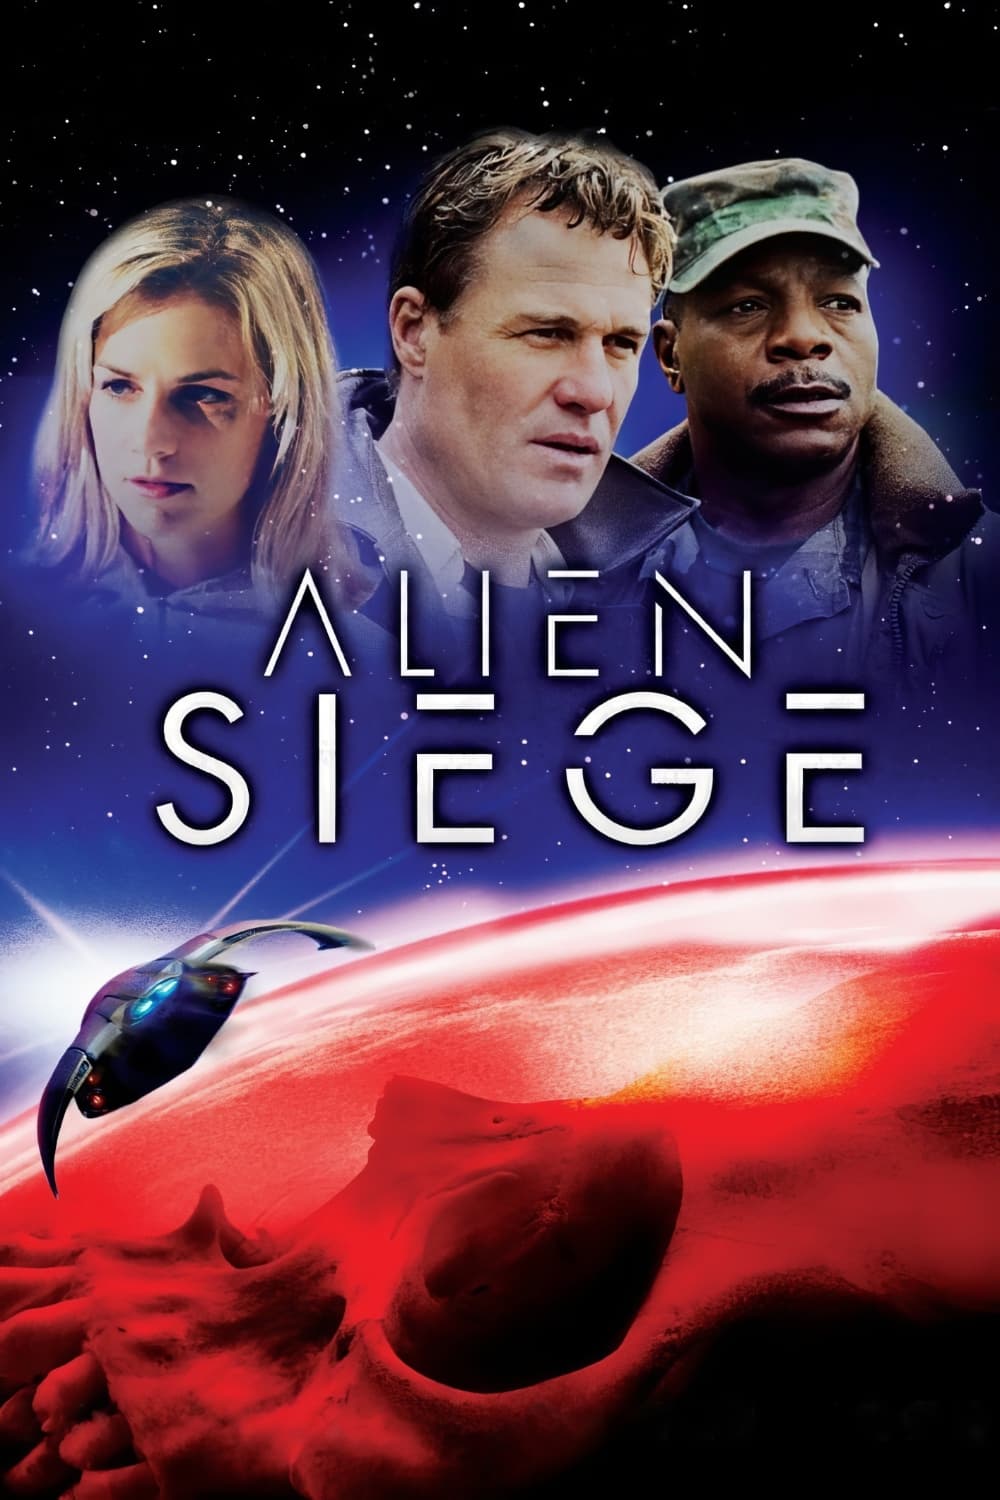 Alien Siege (2005)